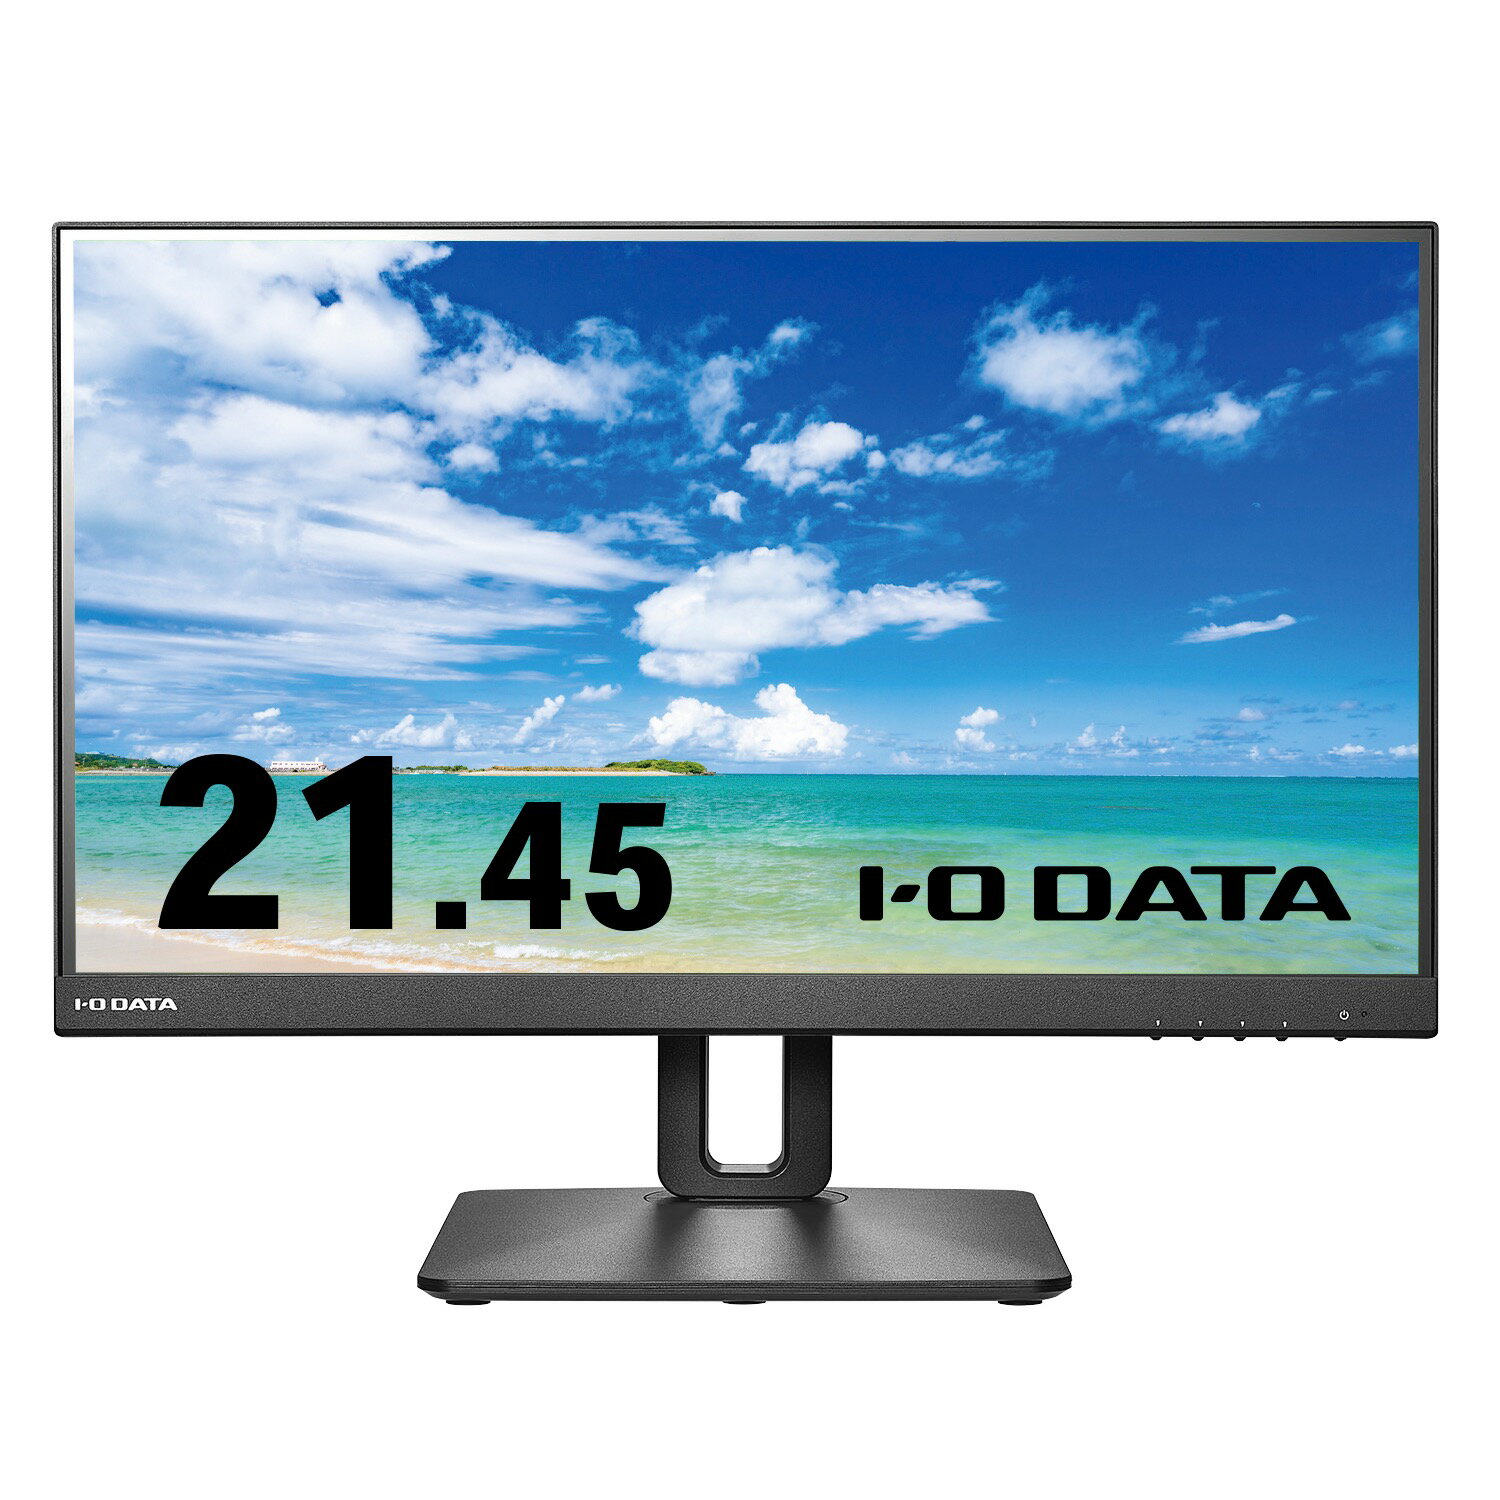 【在庫目安:あり】【送料無料】IODATA EX-D221V-F ワイド液晶ディスプレイ 21.45型/ 1920×1080/ HDMI、DisplayPort/ ブラック/ スピーカー：あり/ 見やすい位置に調整できる/ フリースタイルスタンド